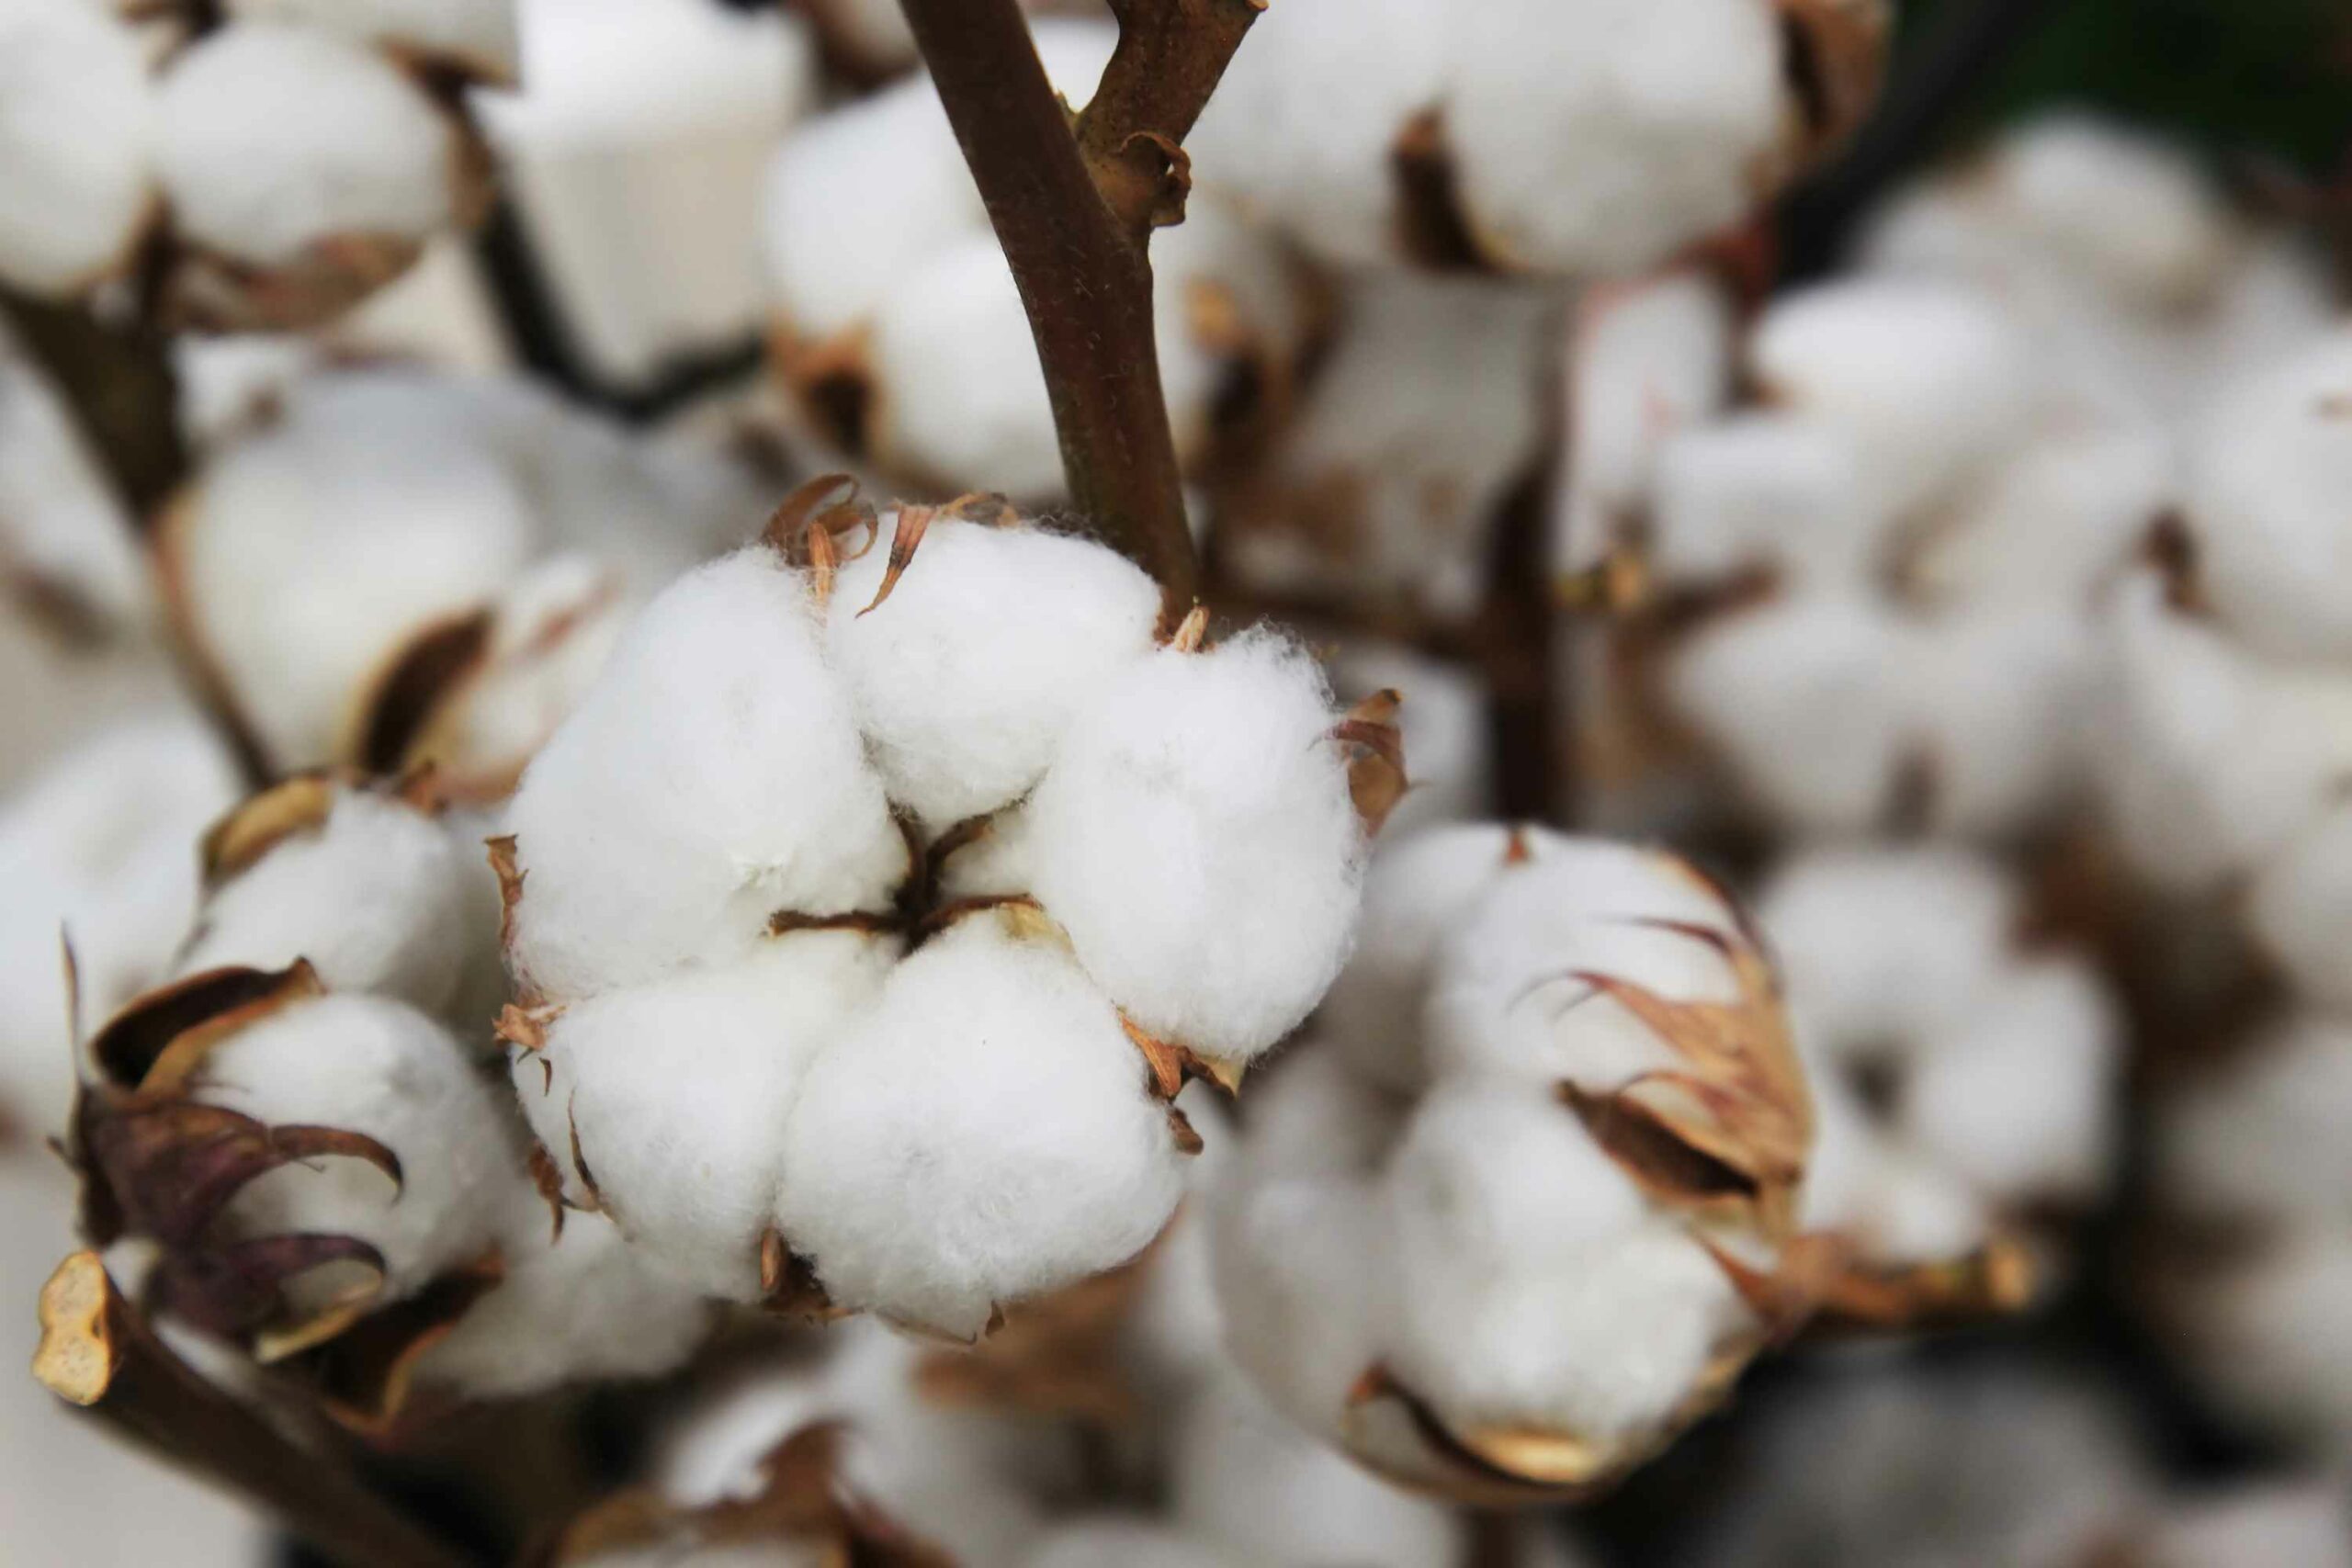 Manzana, algodón y nuez: Chihuahua lidera producción